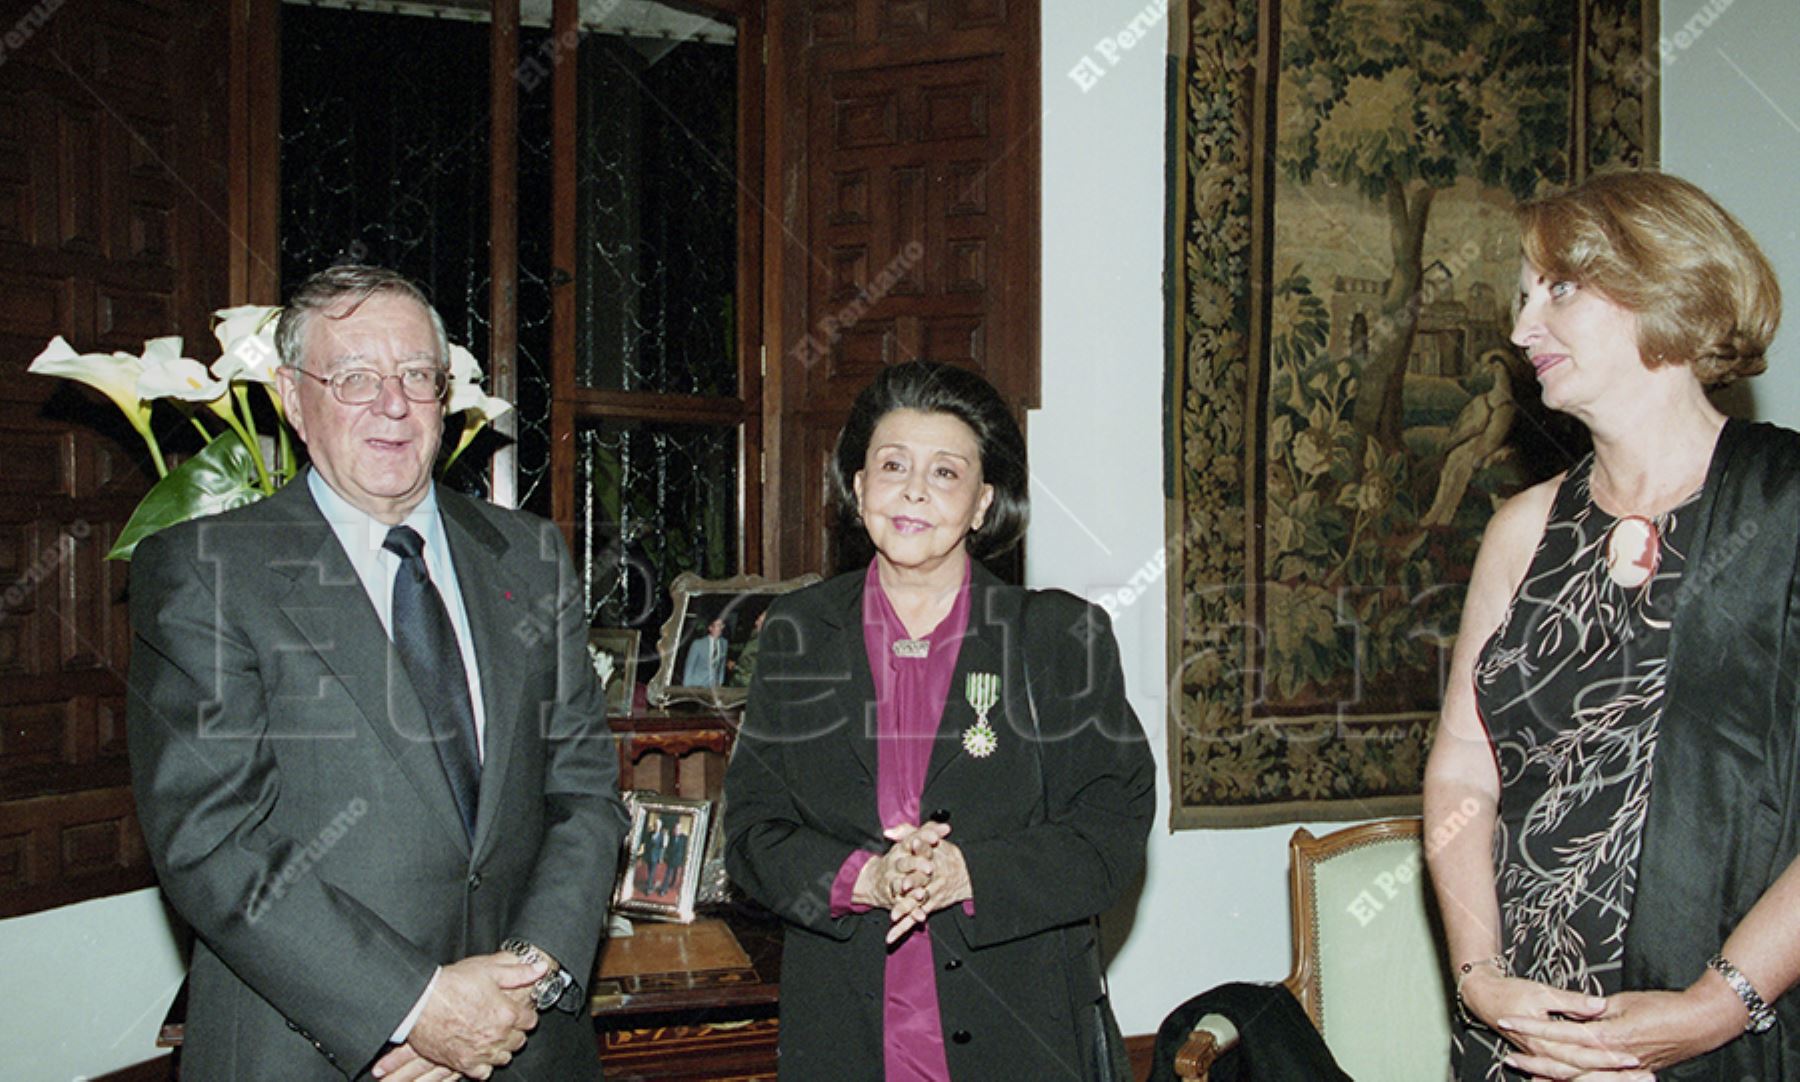 Lima - 10 mayo 2001 / La poeta peruana Blanca Varela fue condecorada por el embajador de Francia, Antoine Blanca, con la Medalla de Caballero de la Orden de Artes y Letras del Gobierno francés. Foto: Archivo / El Peruano